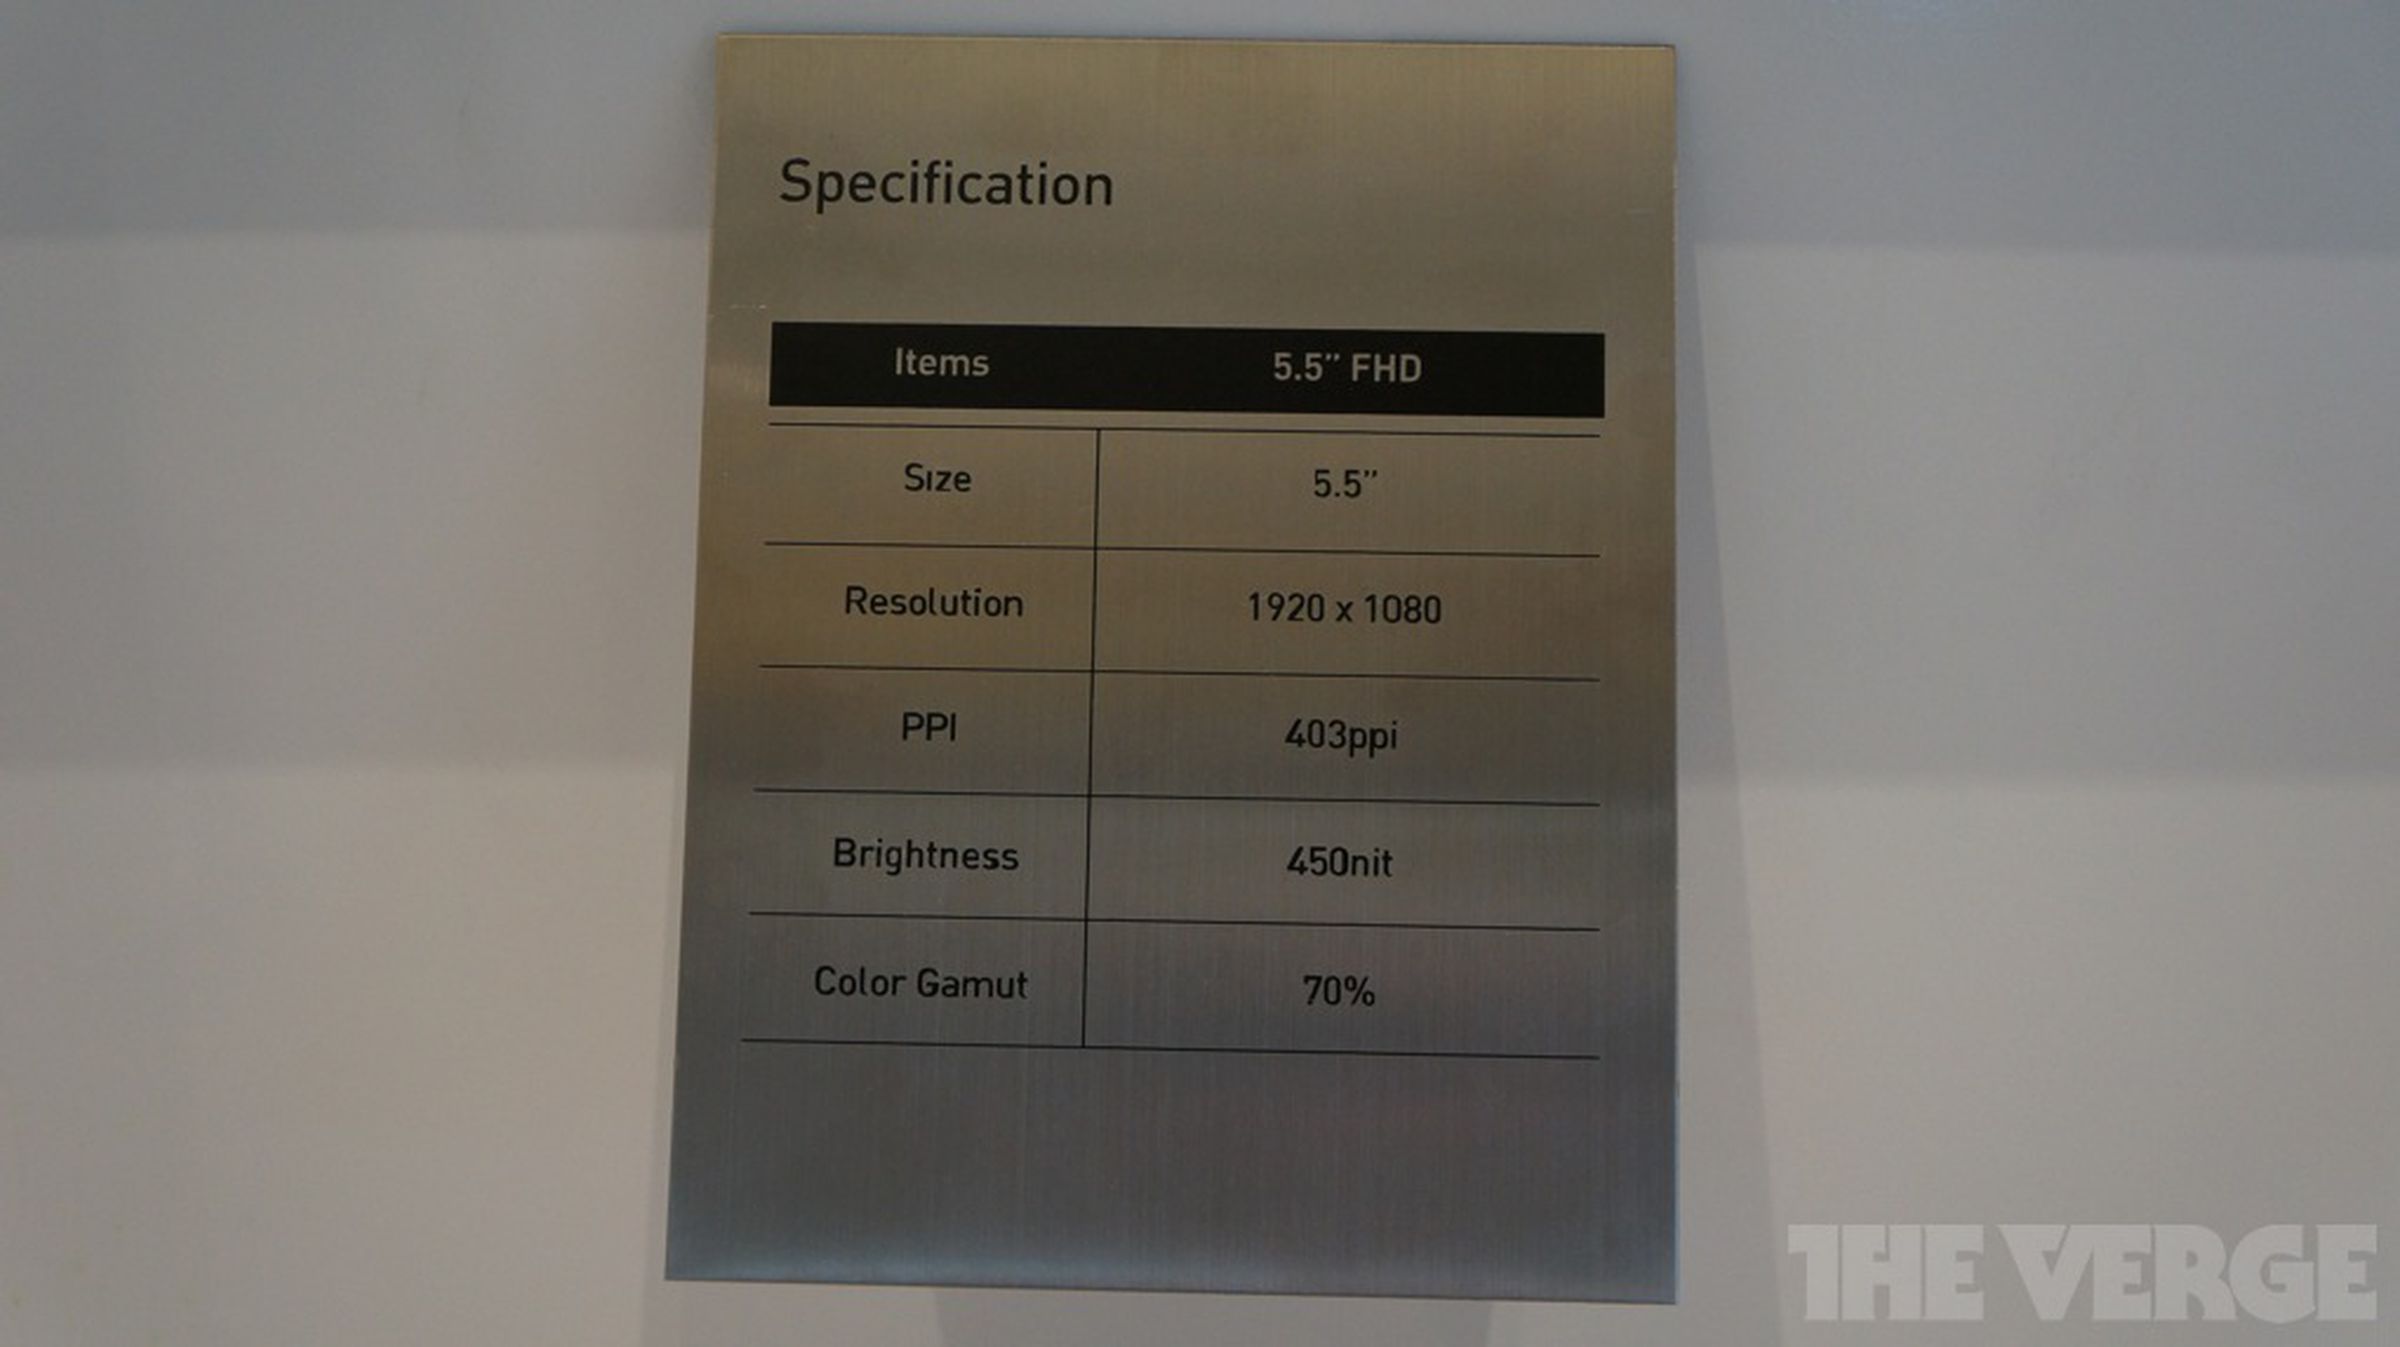 LG Display at CES 2013: high-def mobile displays